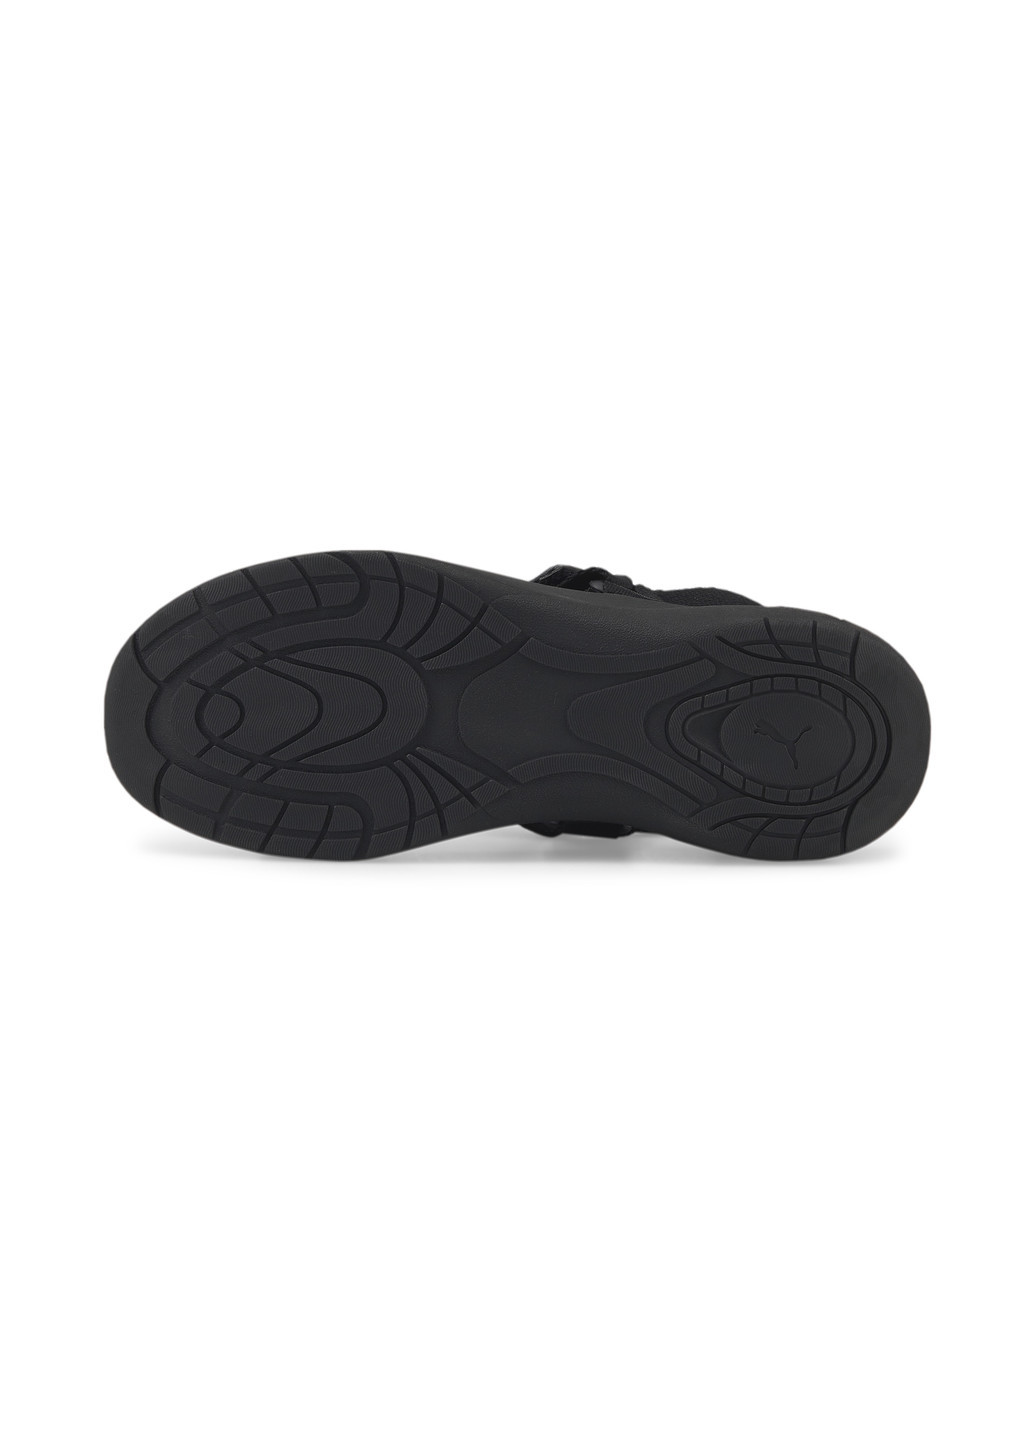 Сандалі Sporty Vola Women's Sandals Puma однотонний чорний спортивний